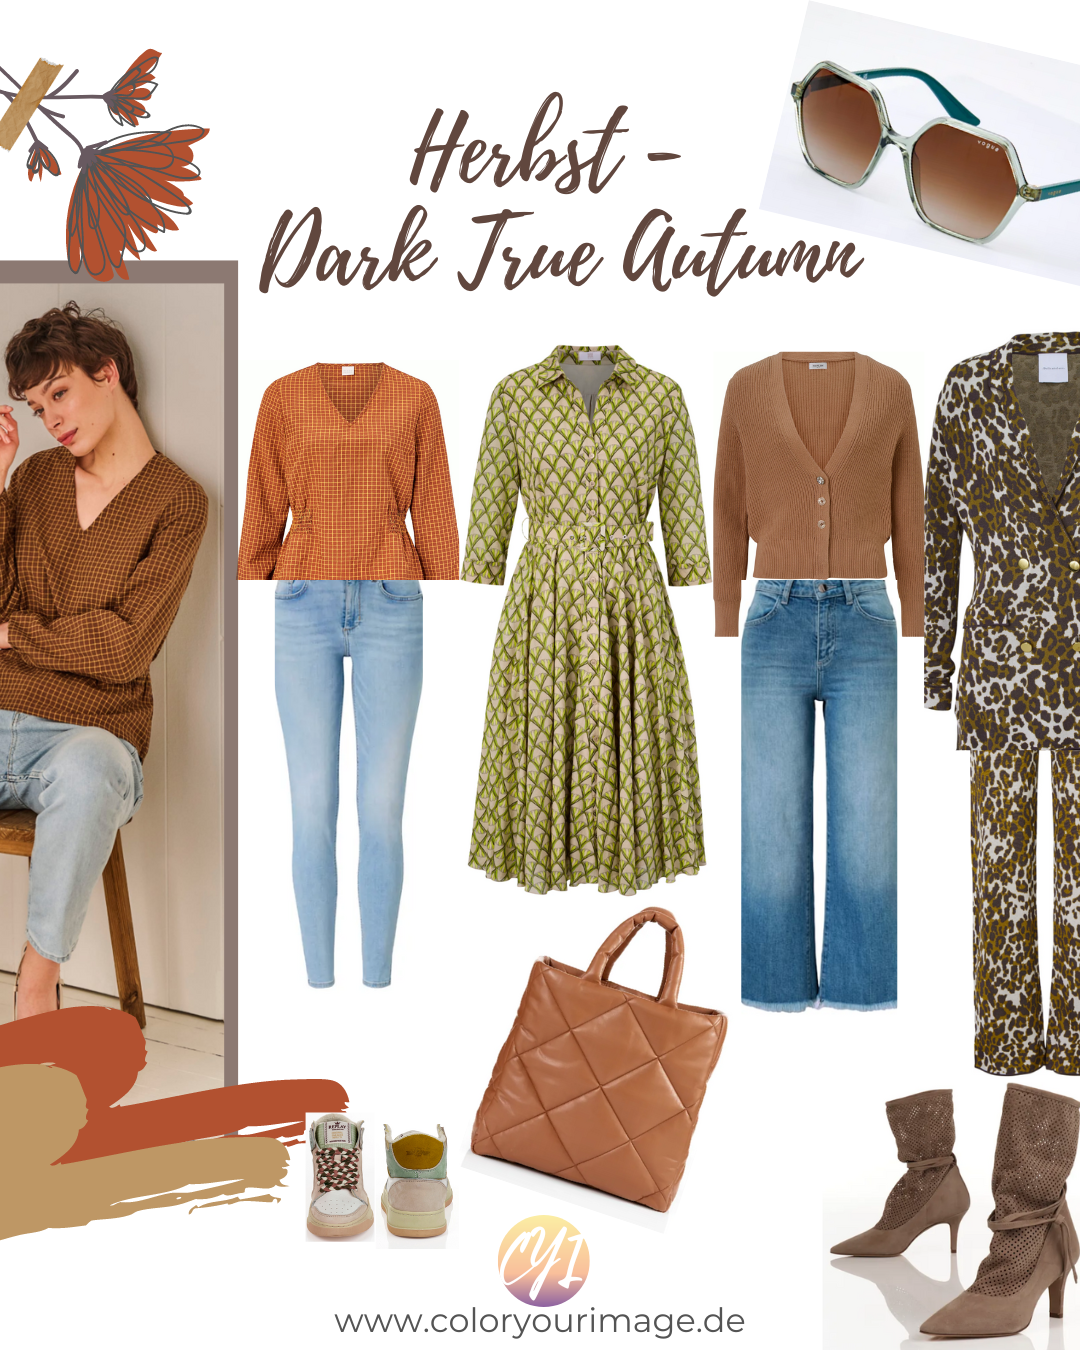 Festliche Farben und Party Outfit Vorschläge für Herbsttypen, Dark True Autumn, Glanz, Schimmer und Pailletten